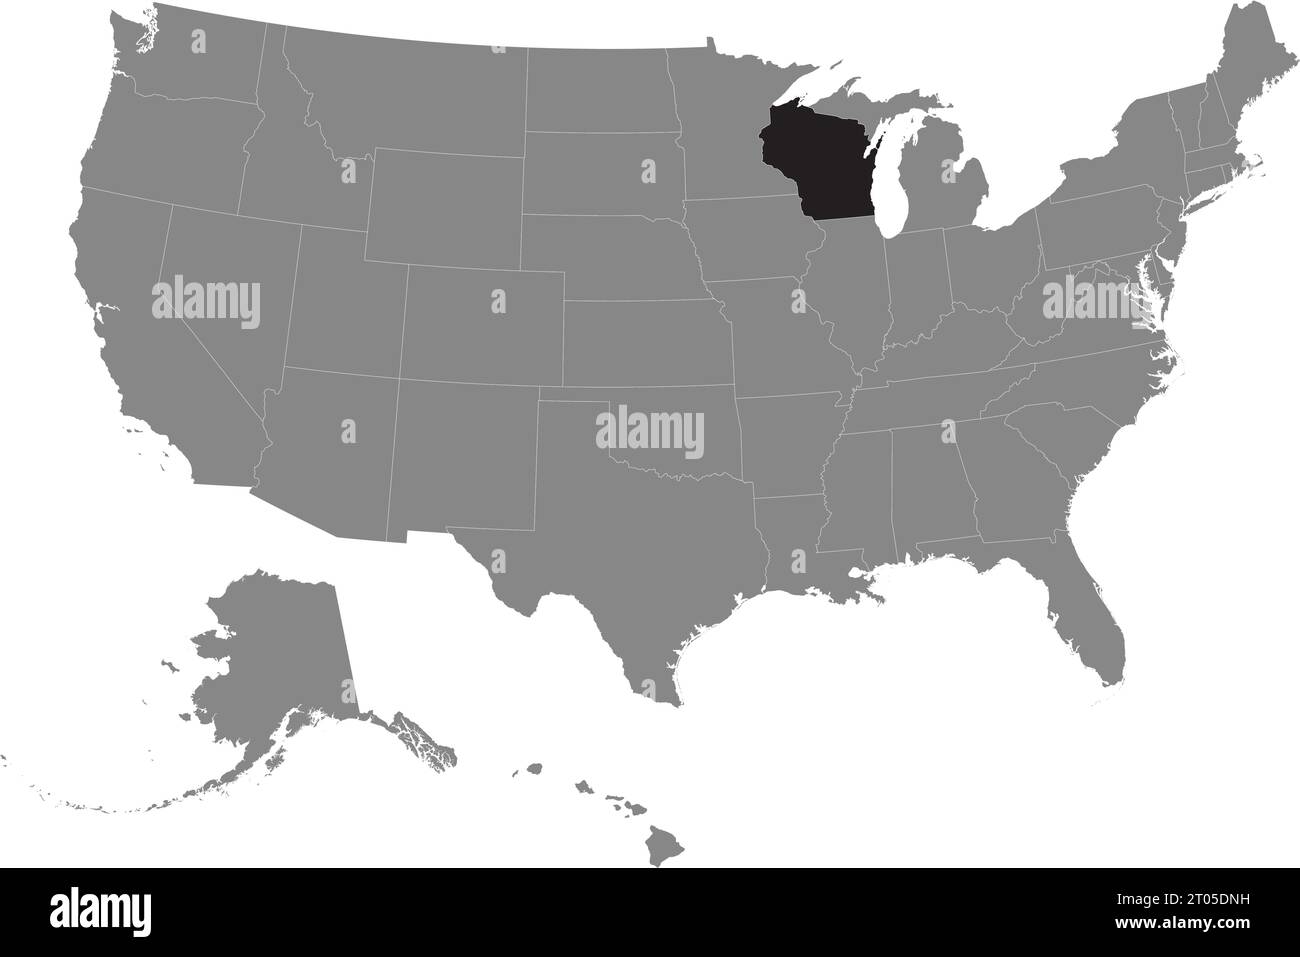 Schwarze CMYK-Bundeskarte von WISCONSIN in detaillierter grauer, leerer politischer Karte der Vereinigten Staaten von Amerika auf transparentem Hintergrund Stock Vektor